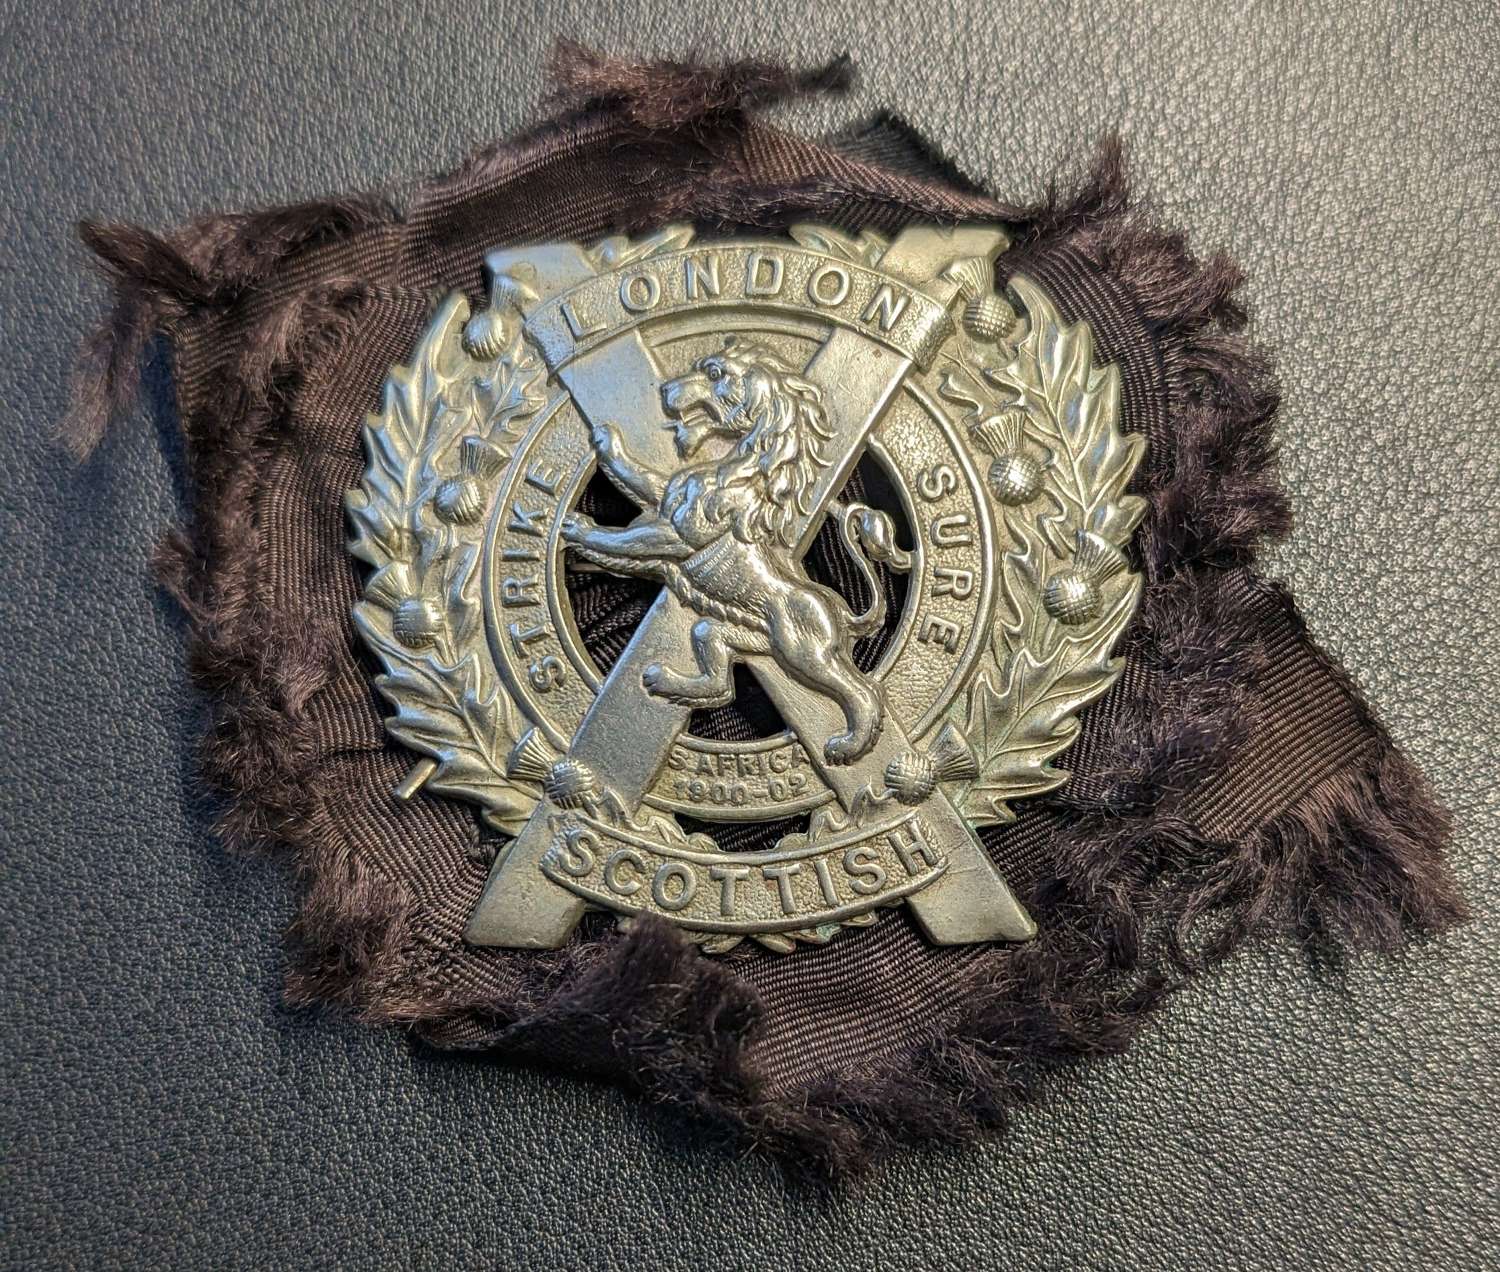 Original 14th Battalion The London Scottish Regiment Cap Badge